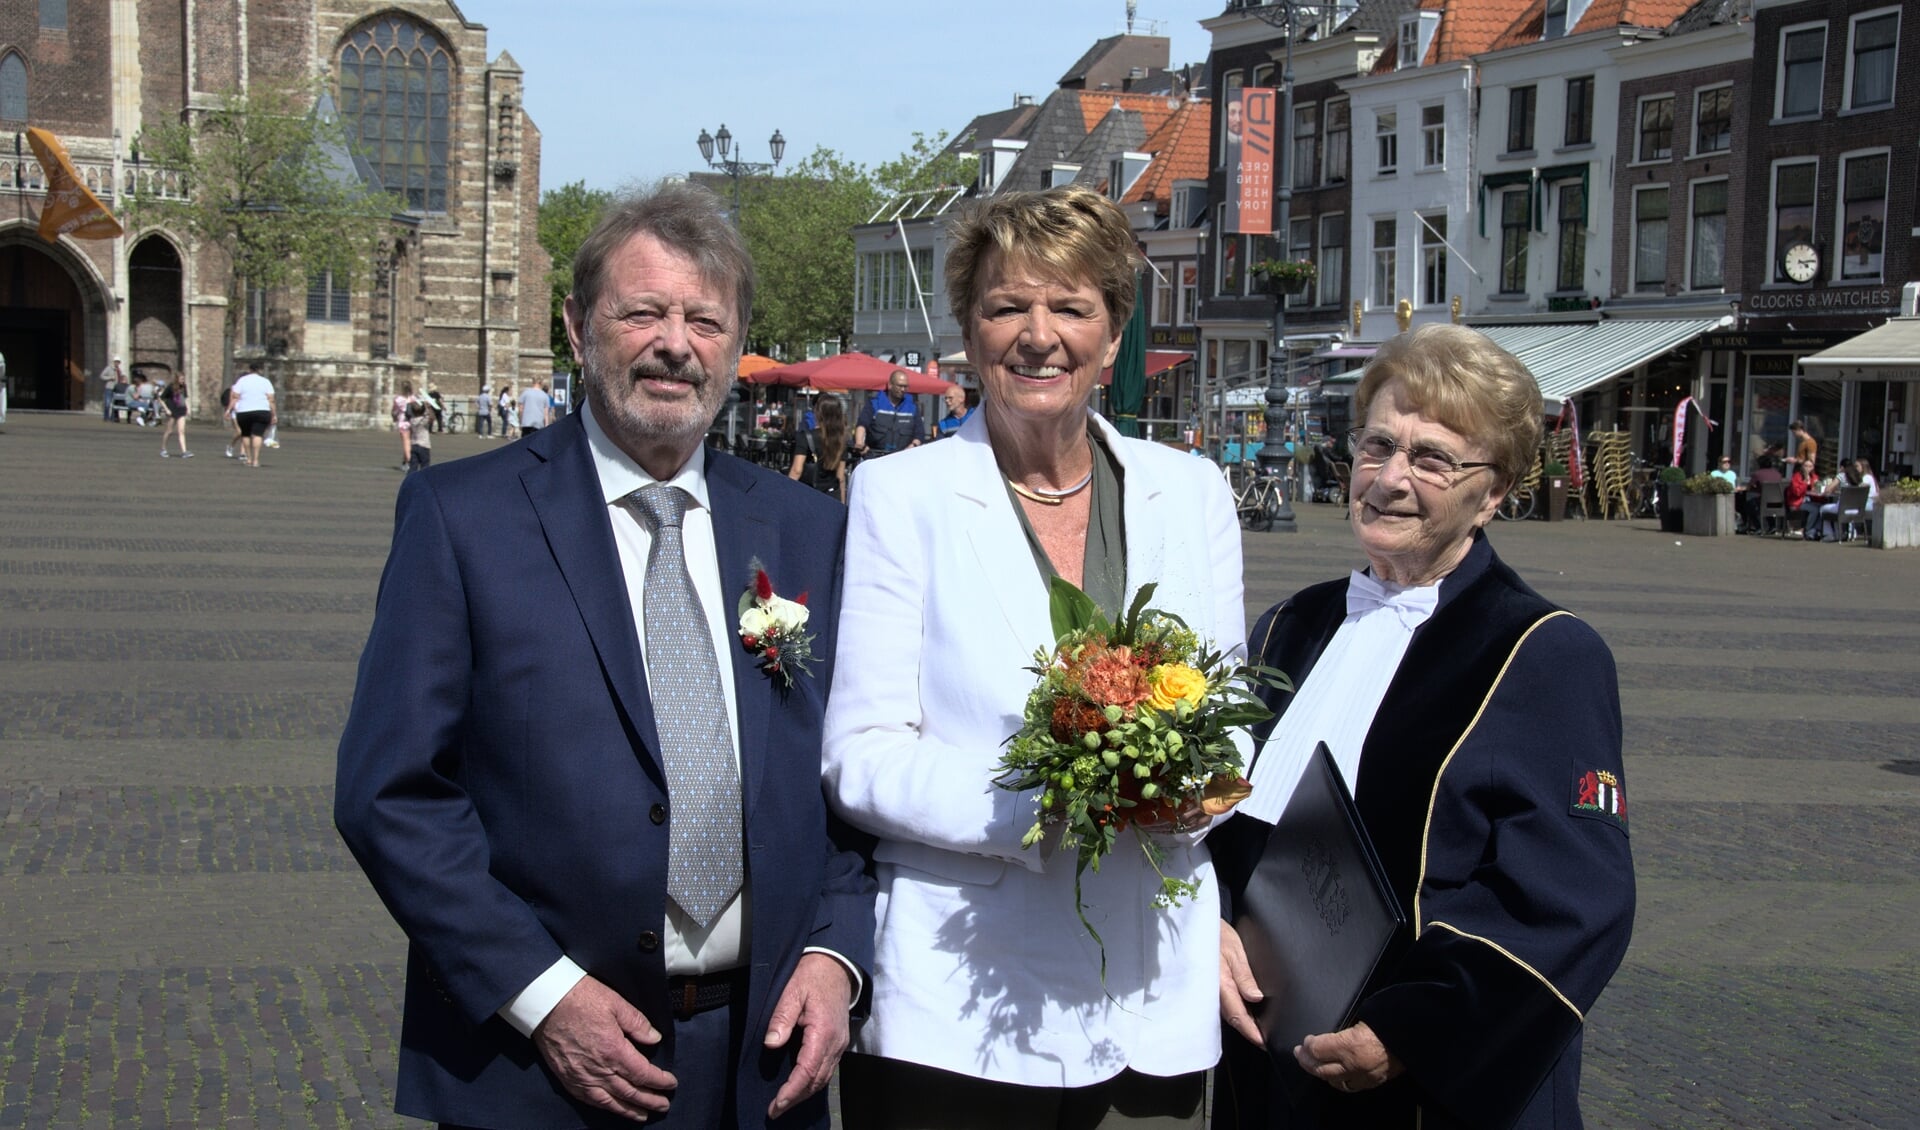 Philip Cheeseman (bruidegom) en Marja van Donselaar (bruid). Rechts staat Judi Klok. (Foto: Nicolien Lugtigheid)